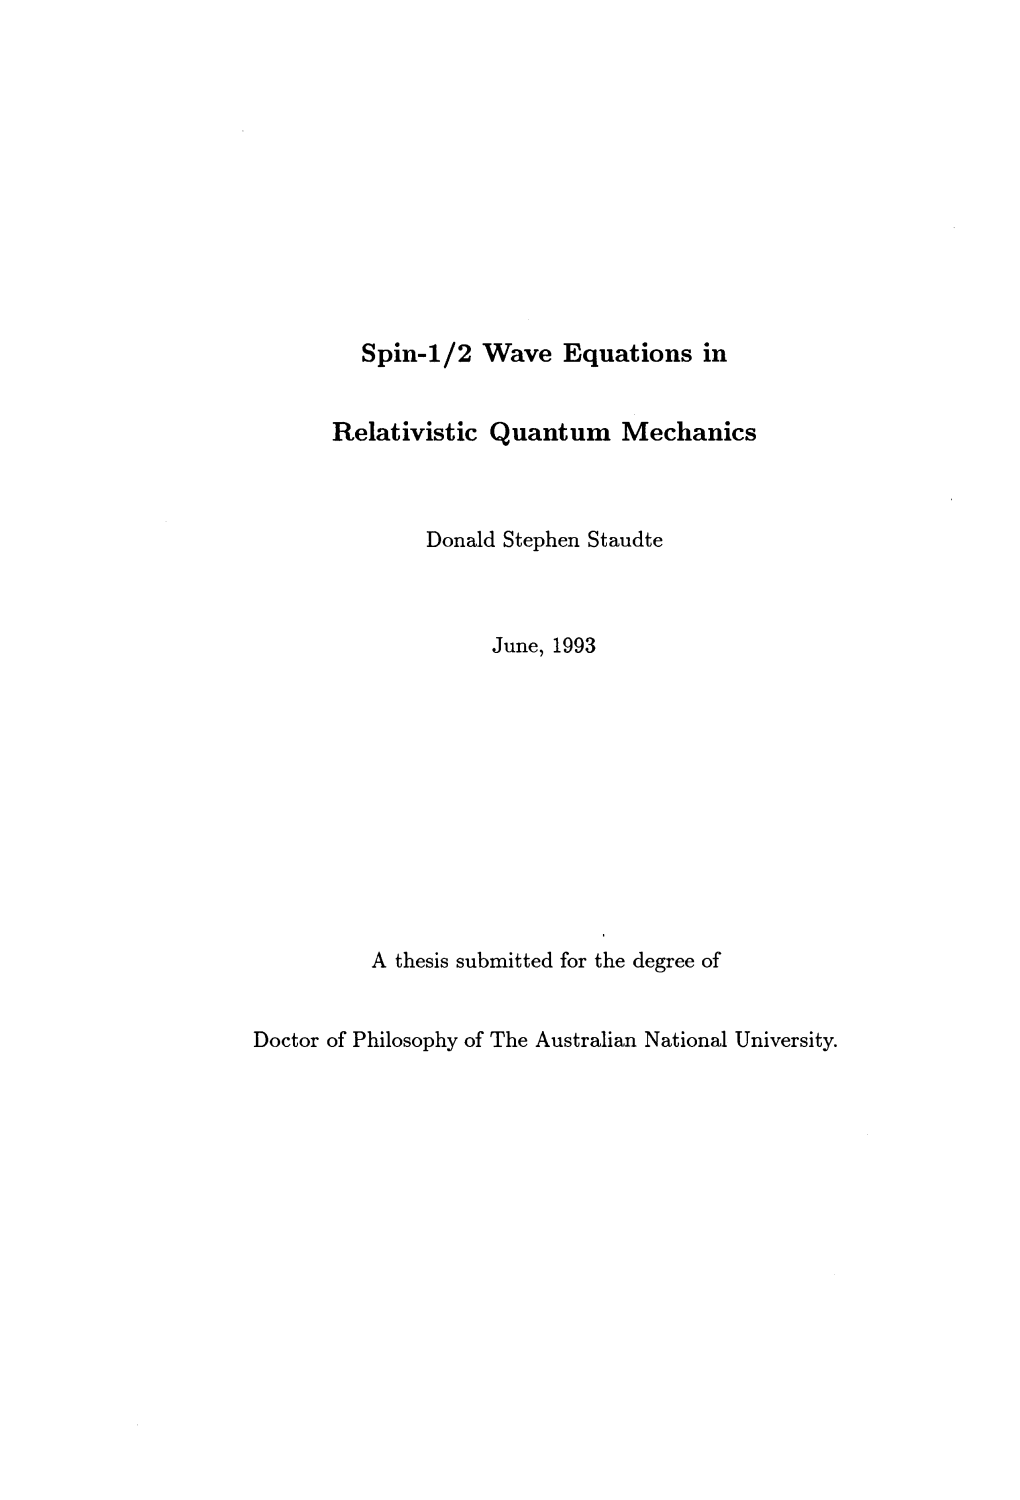 Spin-1/2 Wave Equations in Relativistic Quantum Mechanics